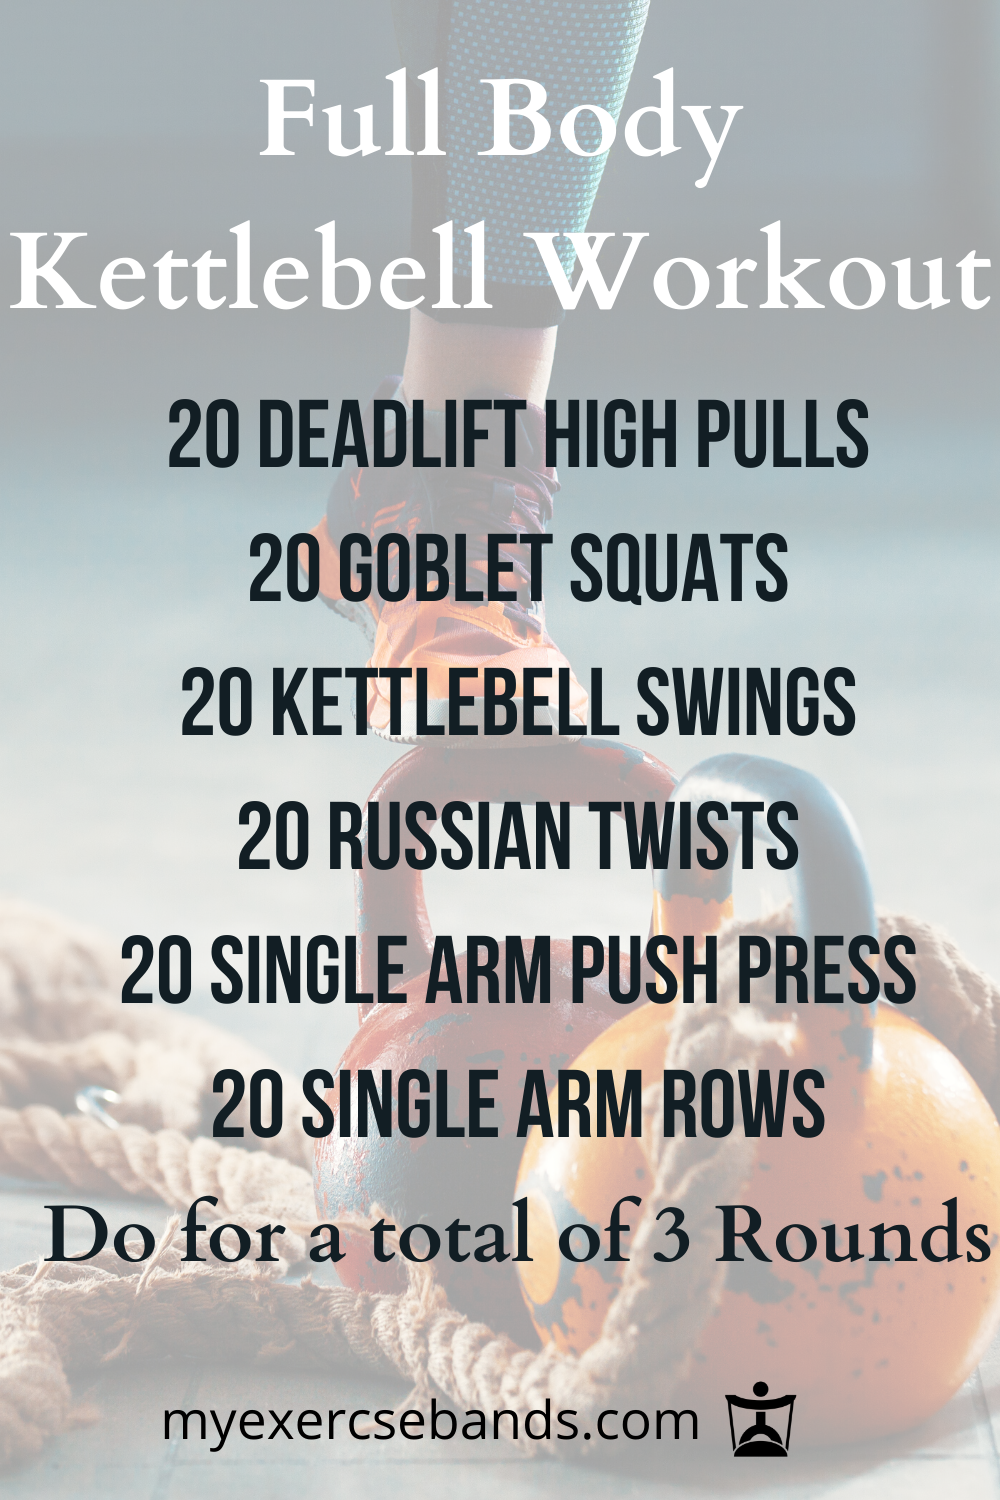 Kettlebell Workout - Kettlebell Workout -   18 cross fitness Body ideas